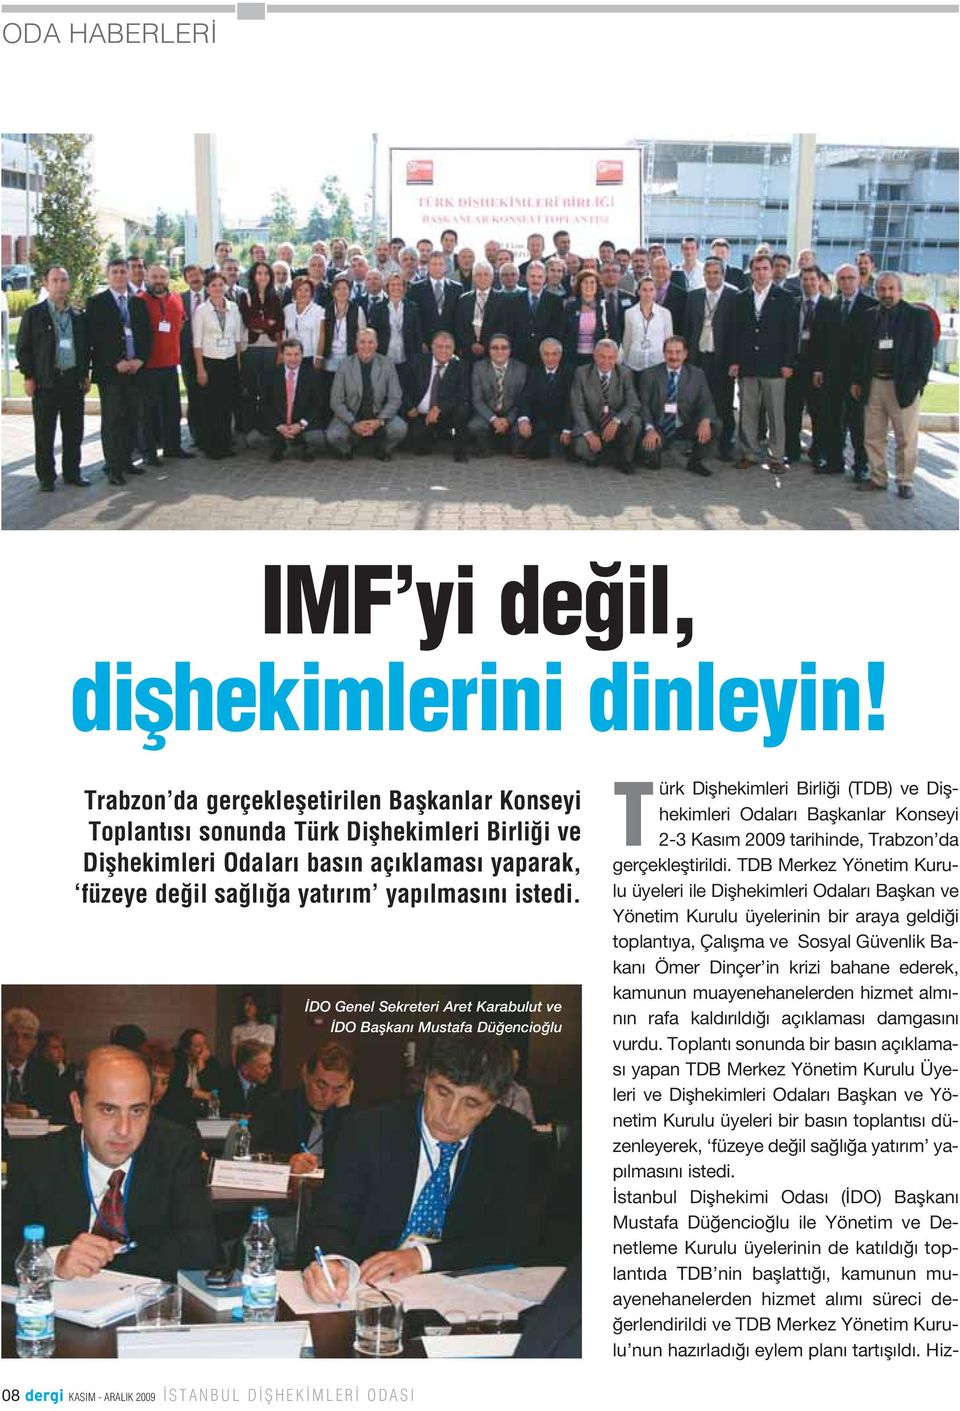 DO Genel Sekreteri Aret Karabulut ve DO Baflkan Mustafa Dü encio lu Türk Diflhekimleri Birli i (TDB) ve Diflhekimleri Odalar Baflkanlar Konseyi 2-3 Kas m 2009 tarihinde, Trabzon da gerçeklefltirildi.